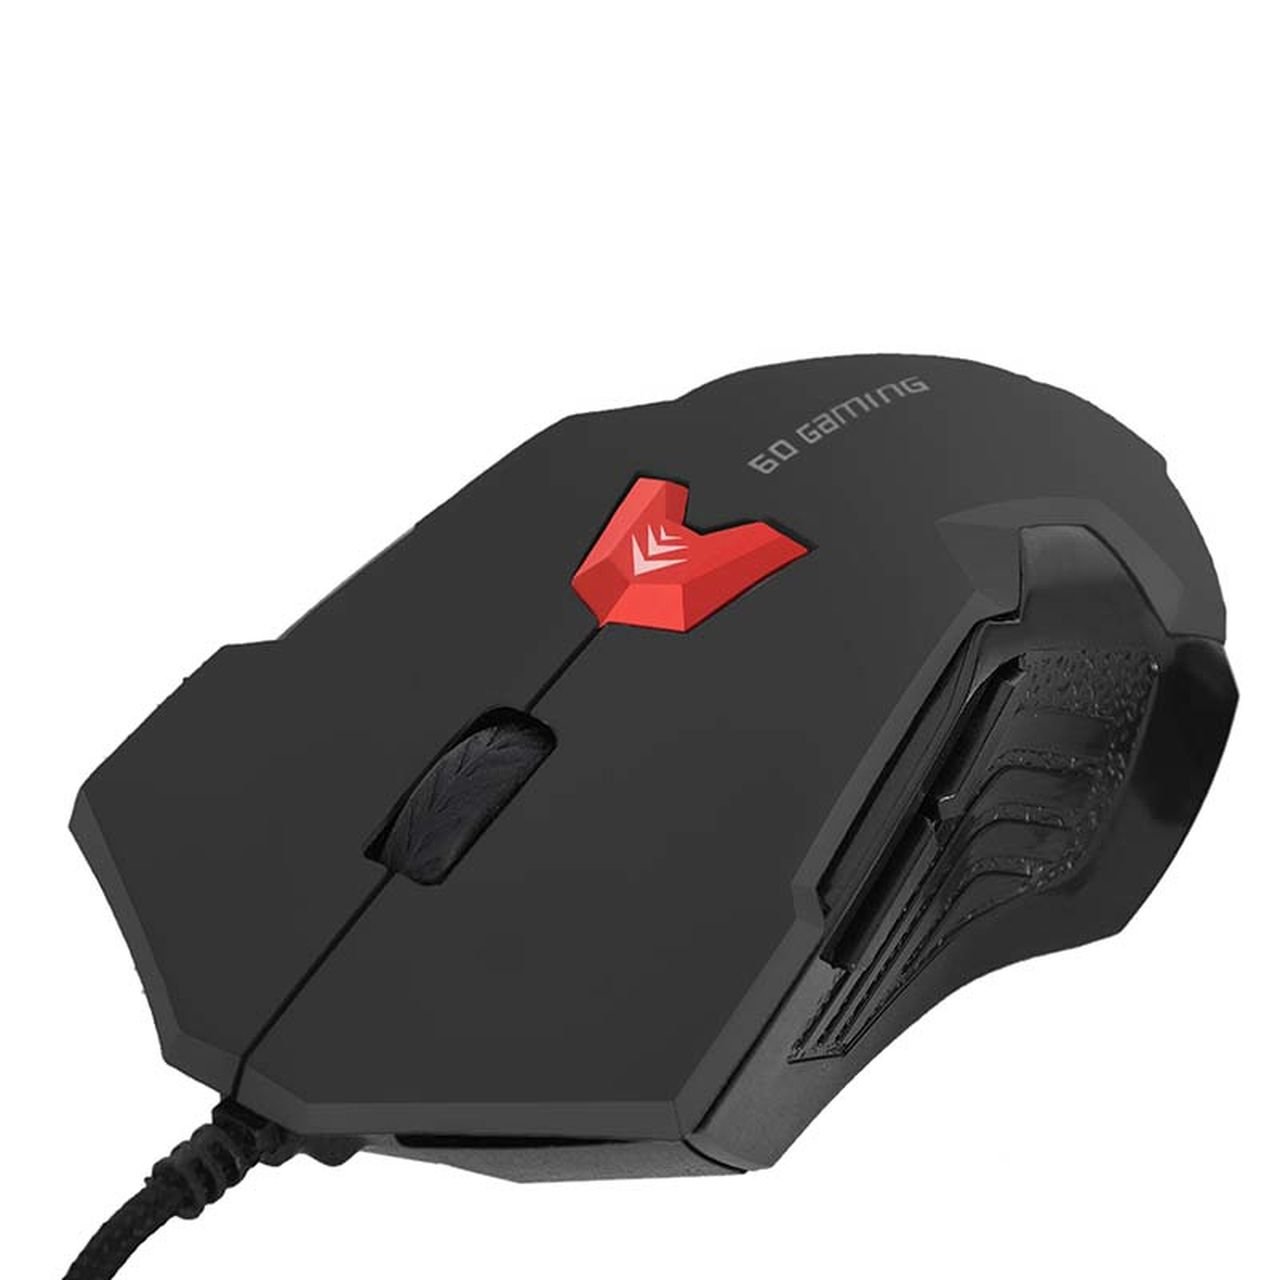 Mouse Gamer Bright 0462 2400dpi Usb 6 Botões - Preto - 1